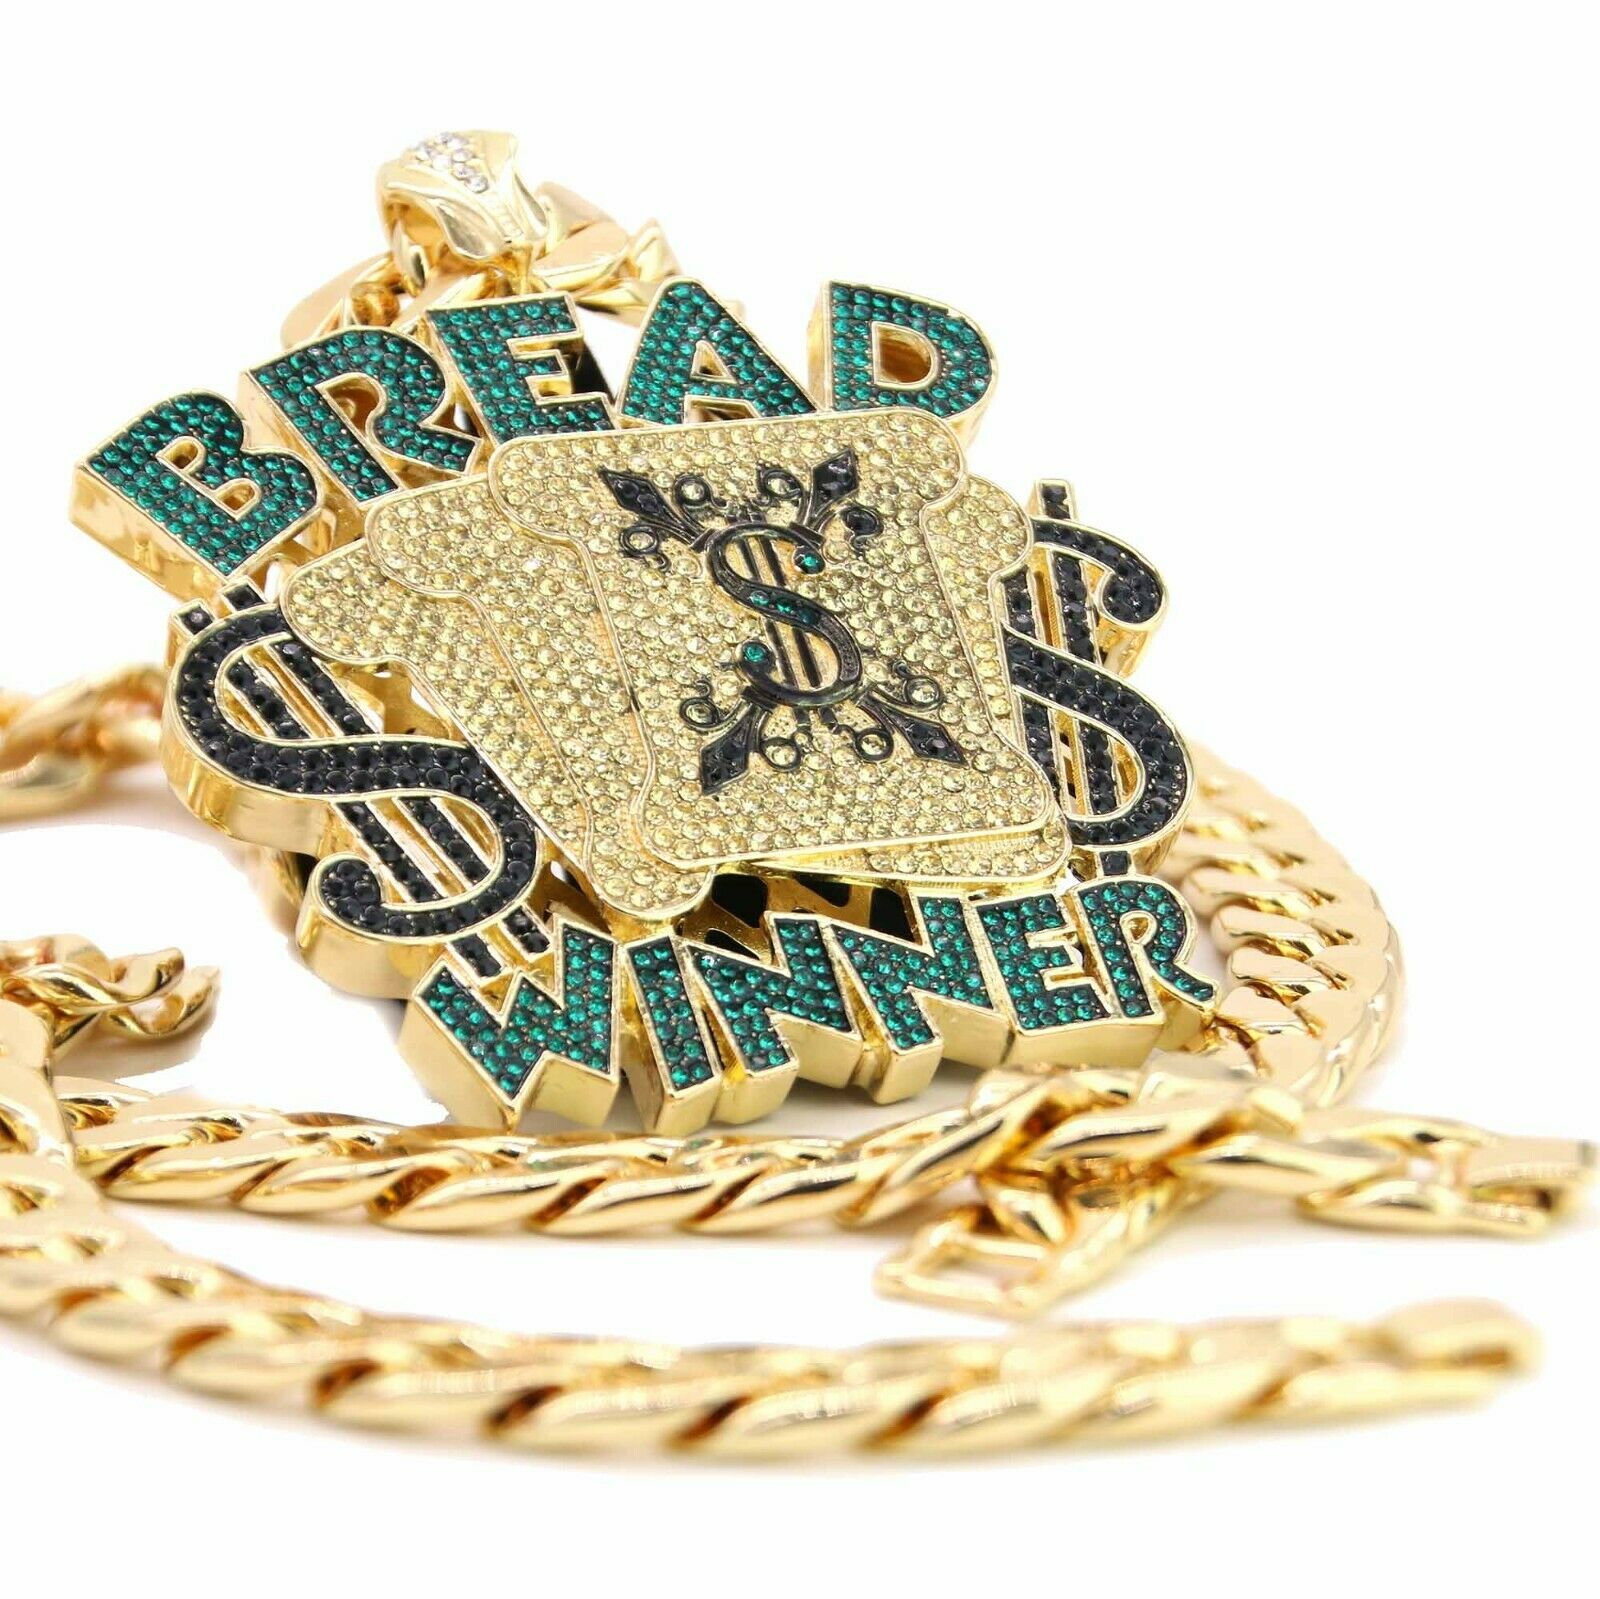 XL Bread Winner Pendant 30" Cuban Chain & Bracelet